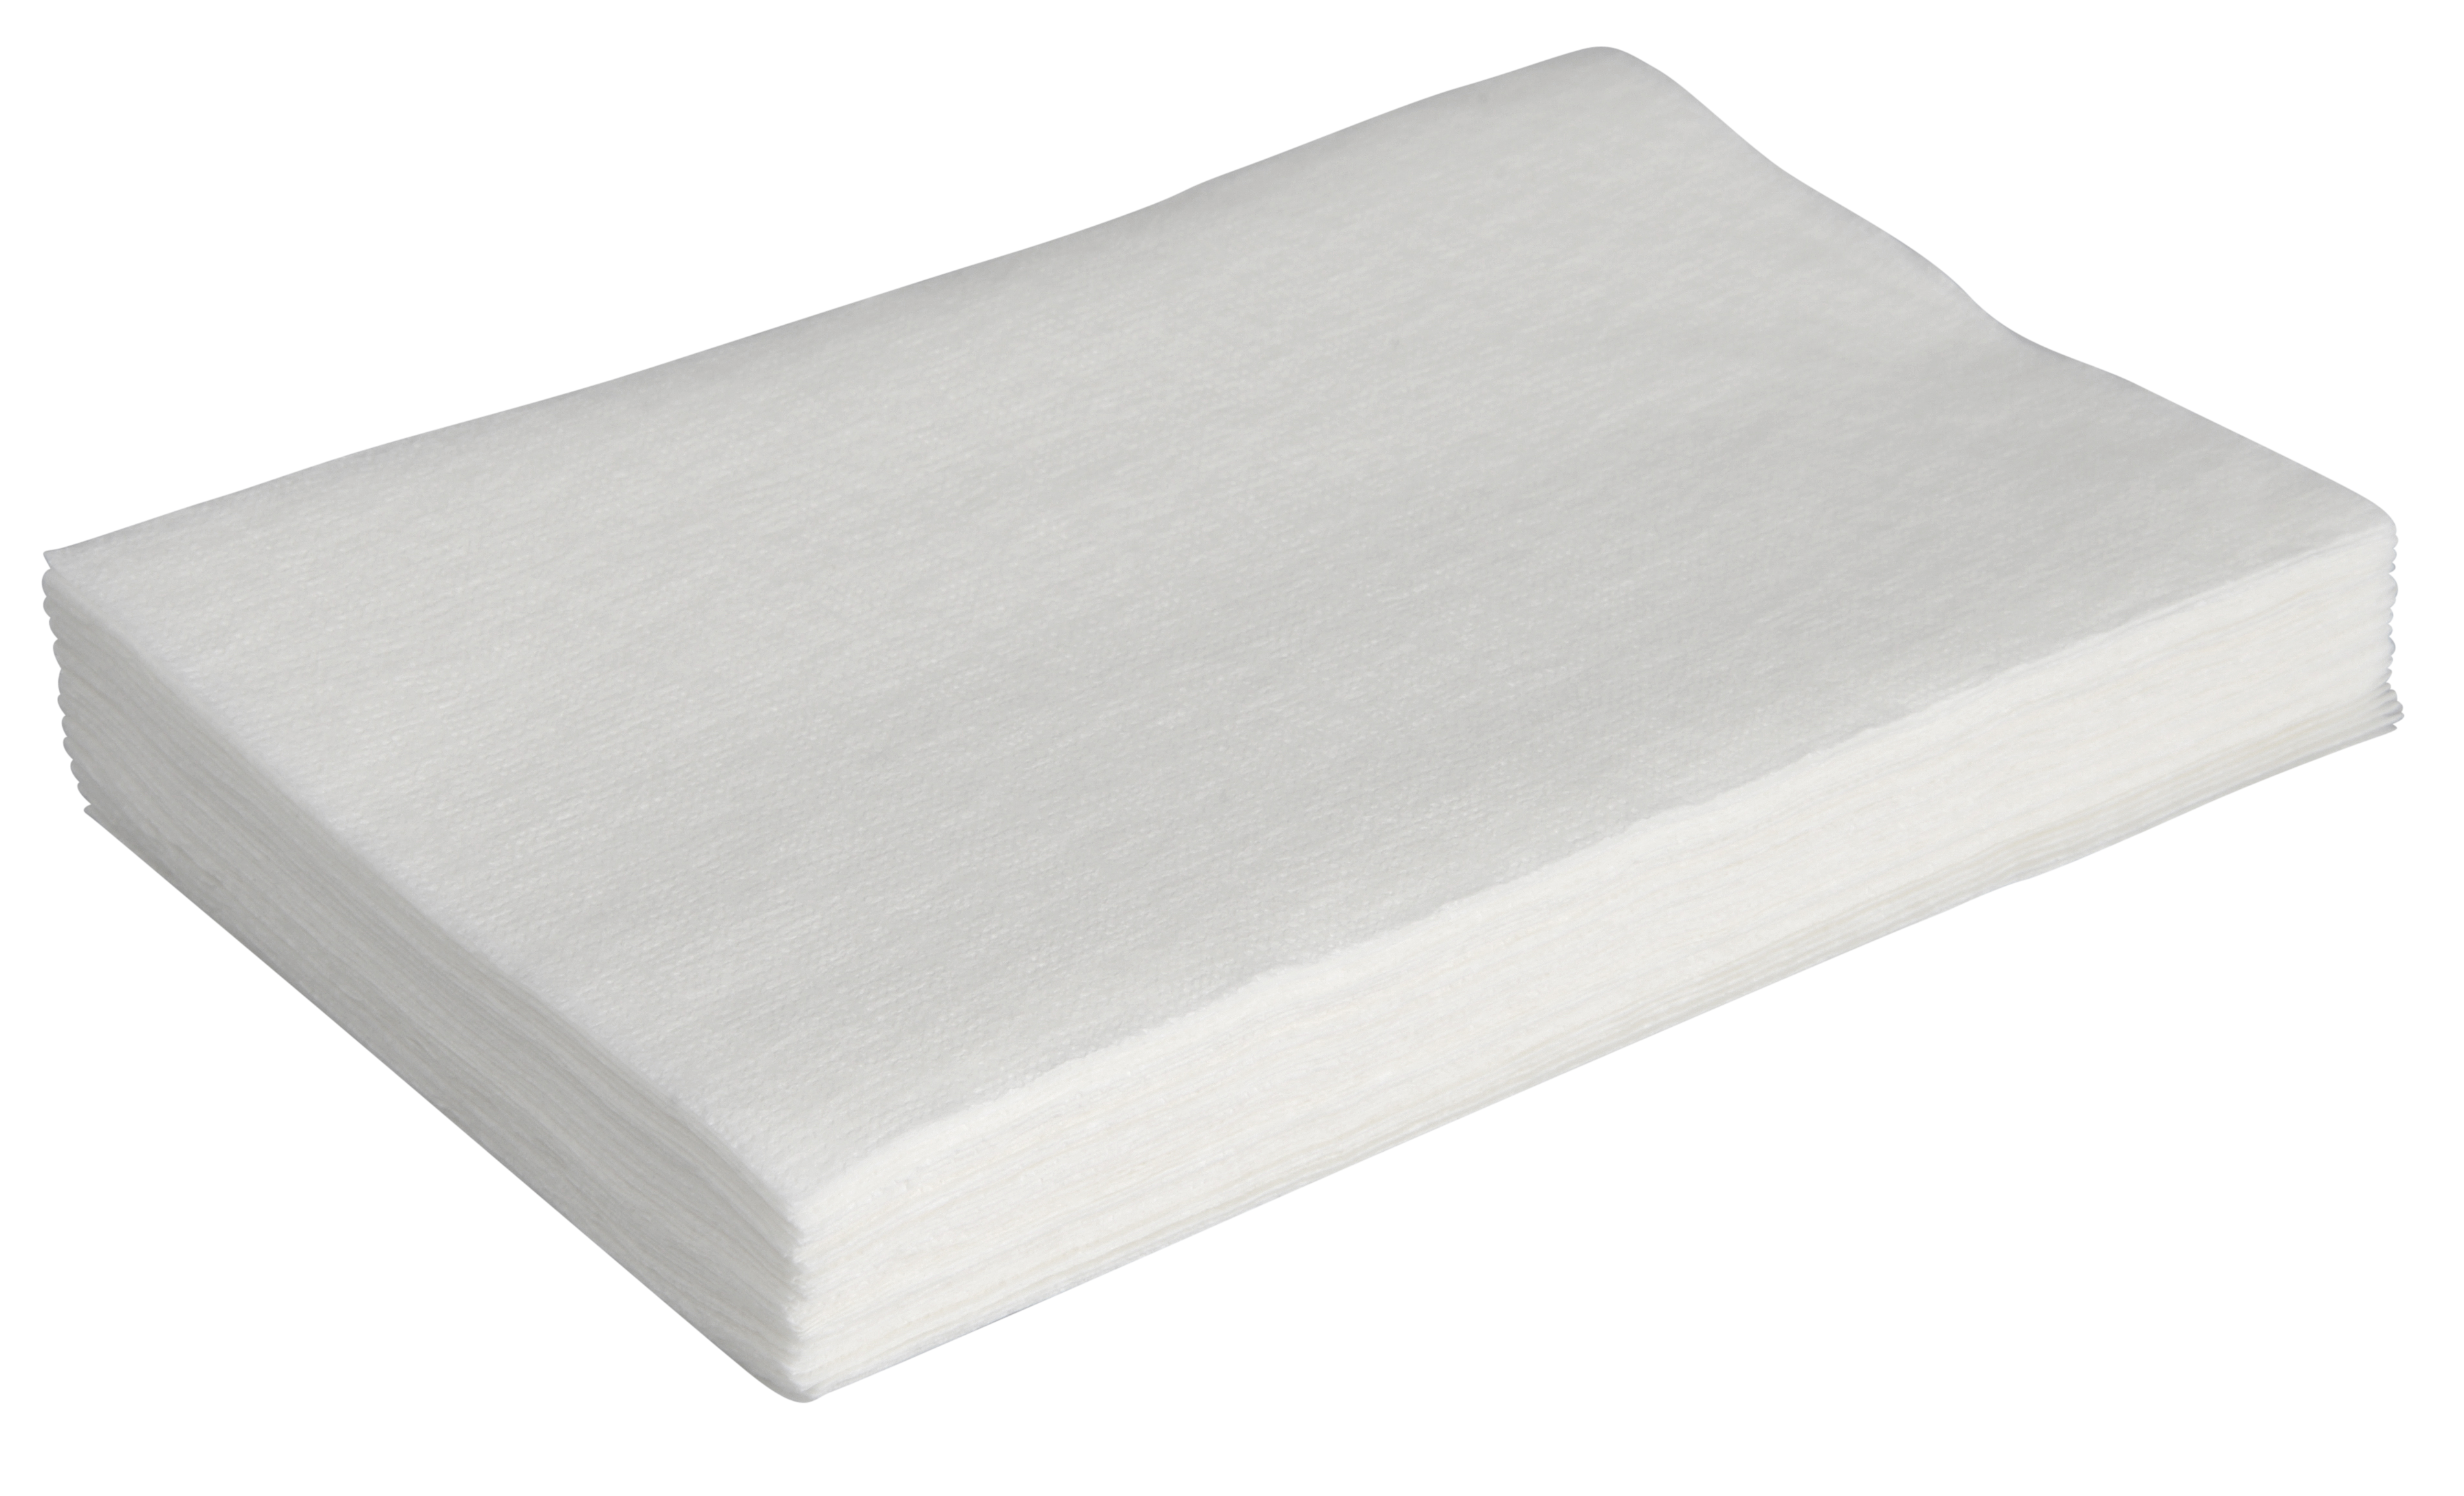 Spenderservietten, 1-lagig, Interfold, 21 x 500 Stück/Karton, weiß, 21,5 x 16 cm